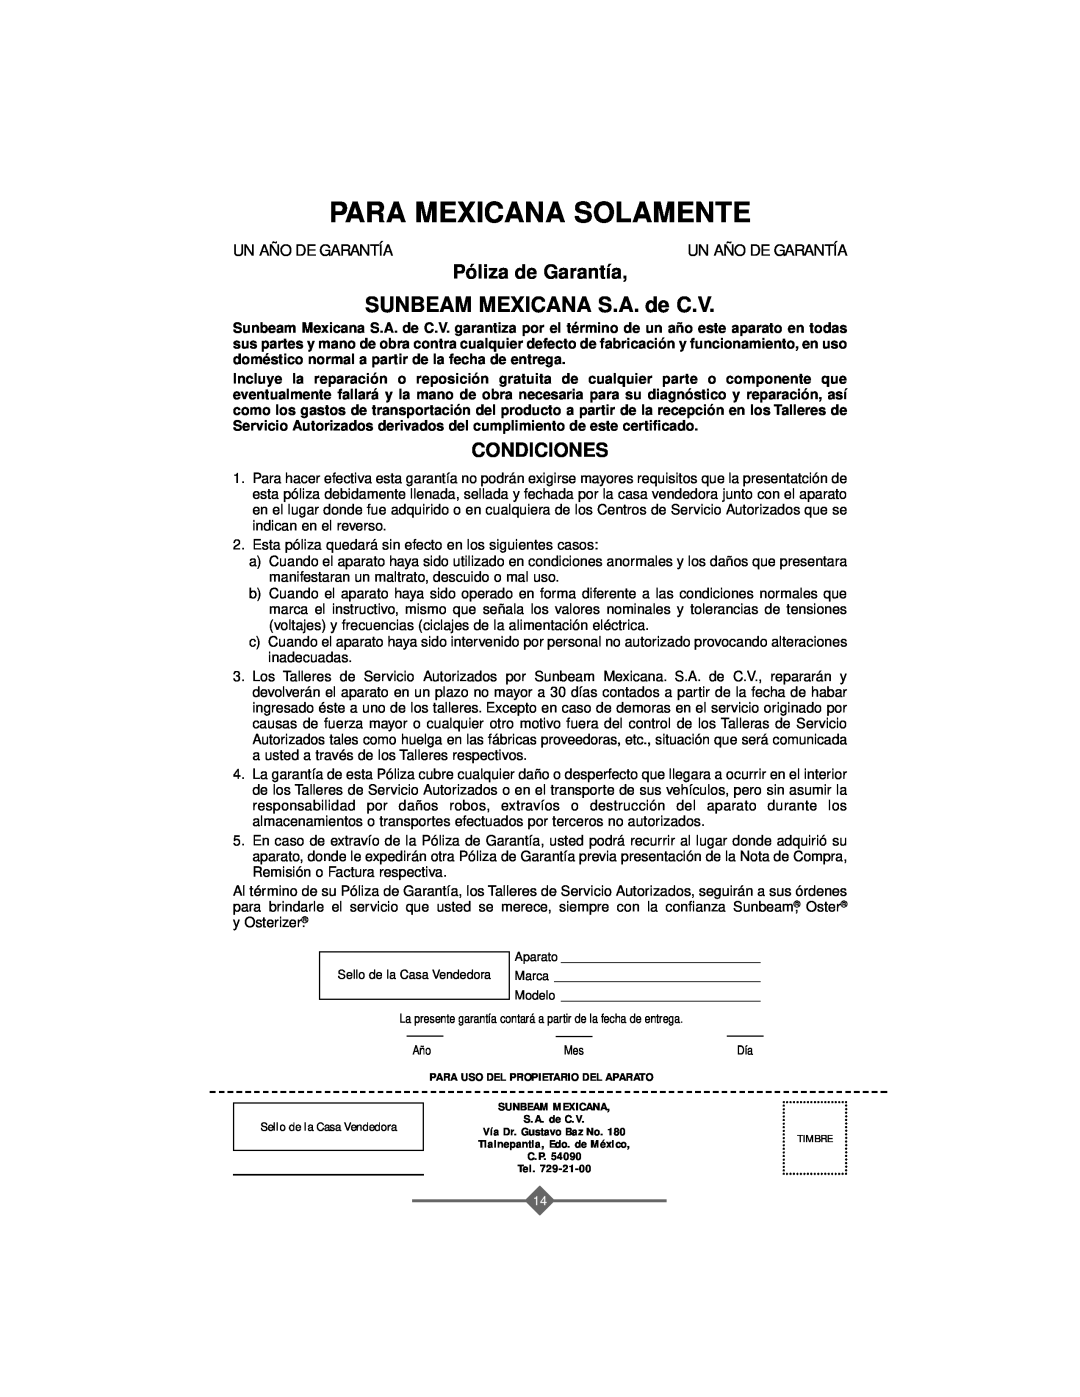 Sunbeam 4706, 4708 instruction manual SUNBEAM MEXICANA S.A. de C.V, Para Mexicana Solamente, Póliza de Garantía, Condiciones 